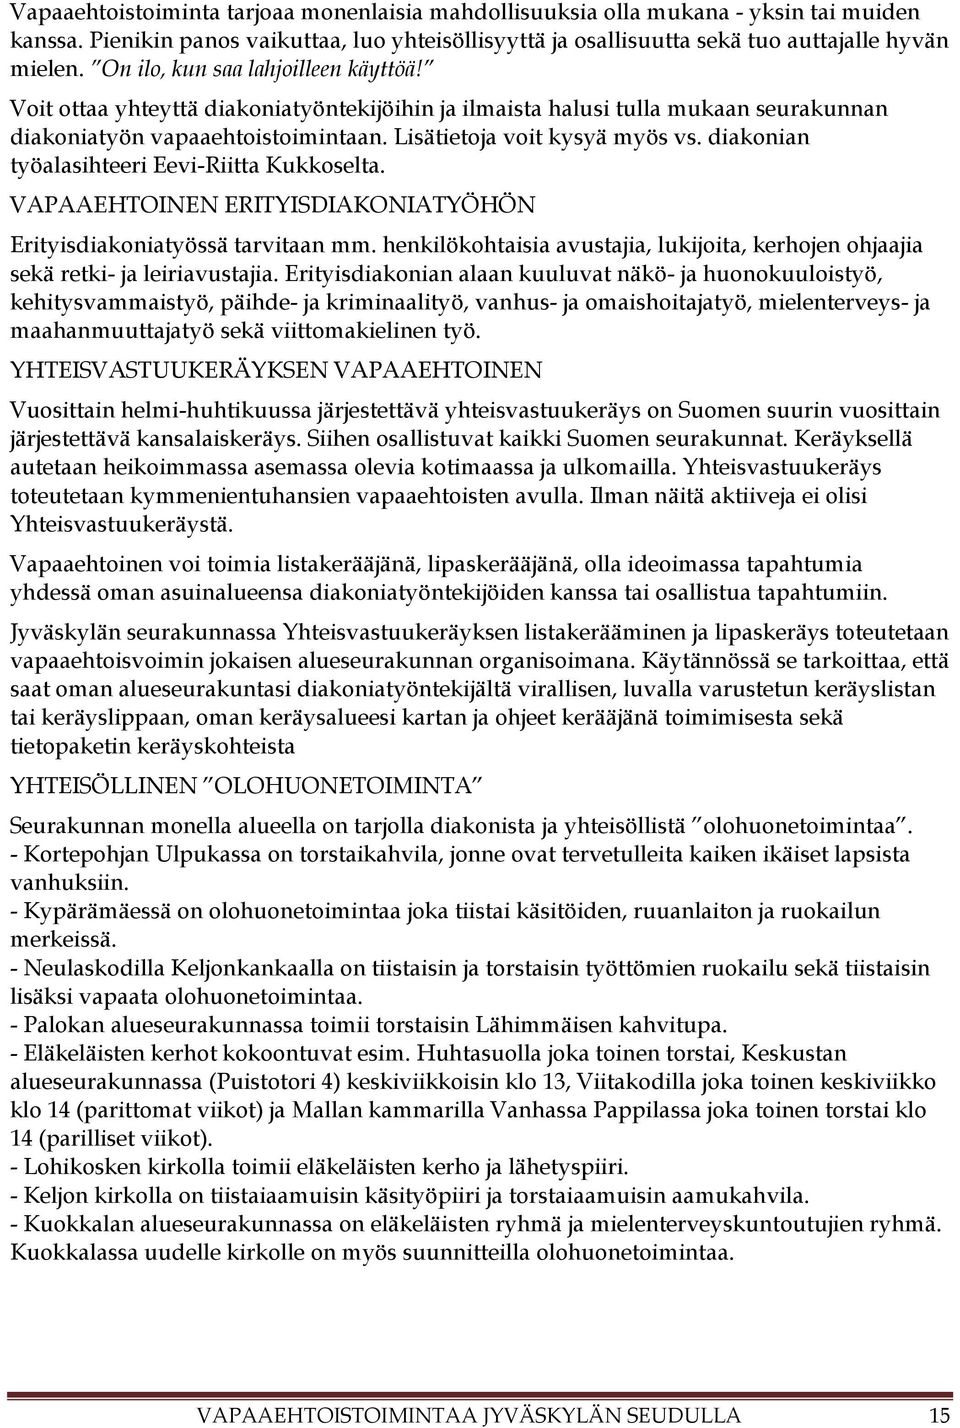 diakonian työalasihteeri Eevi-Riitta Kukkoselta. VAPAAEHTOINEN ERITYISDIAKONIATYÖHÖN Erityisdiakoniatyössä tarvitaan mm.